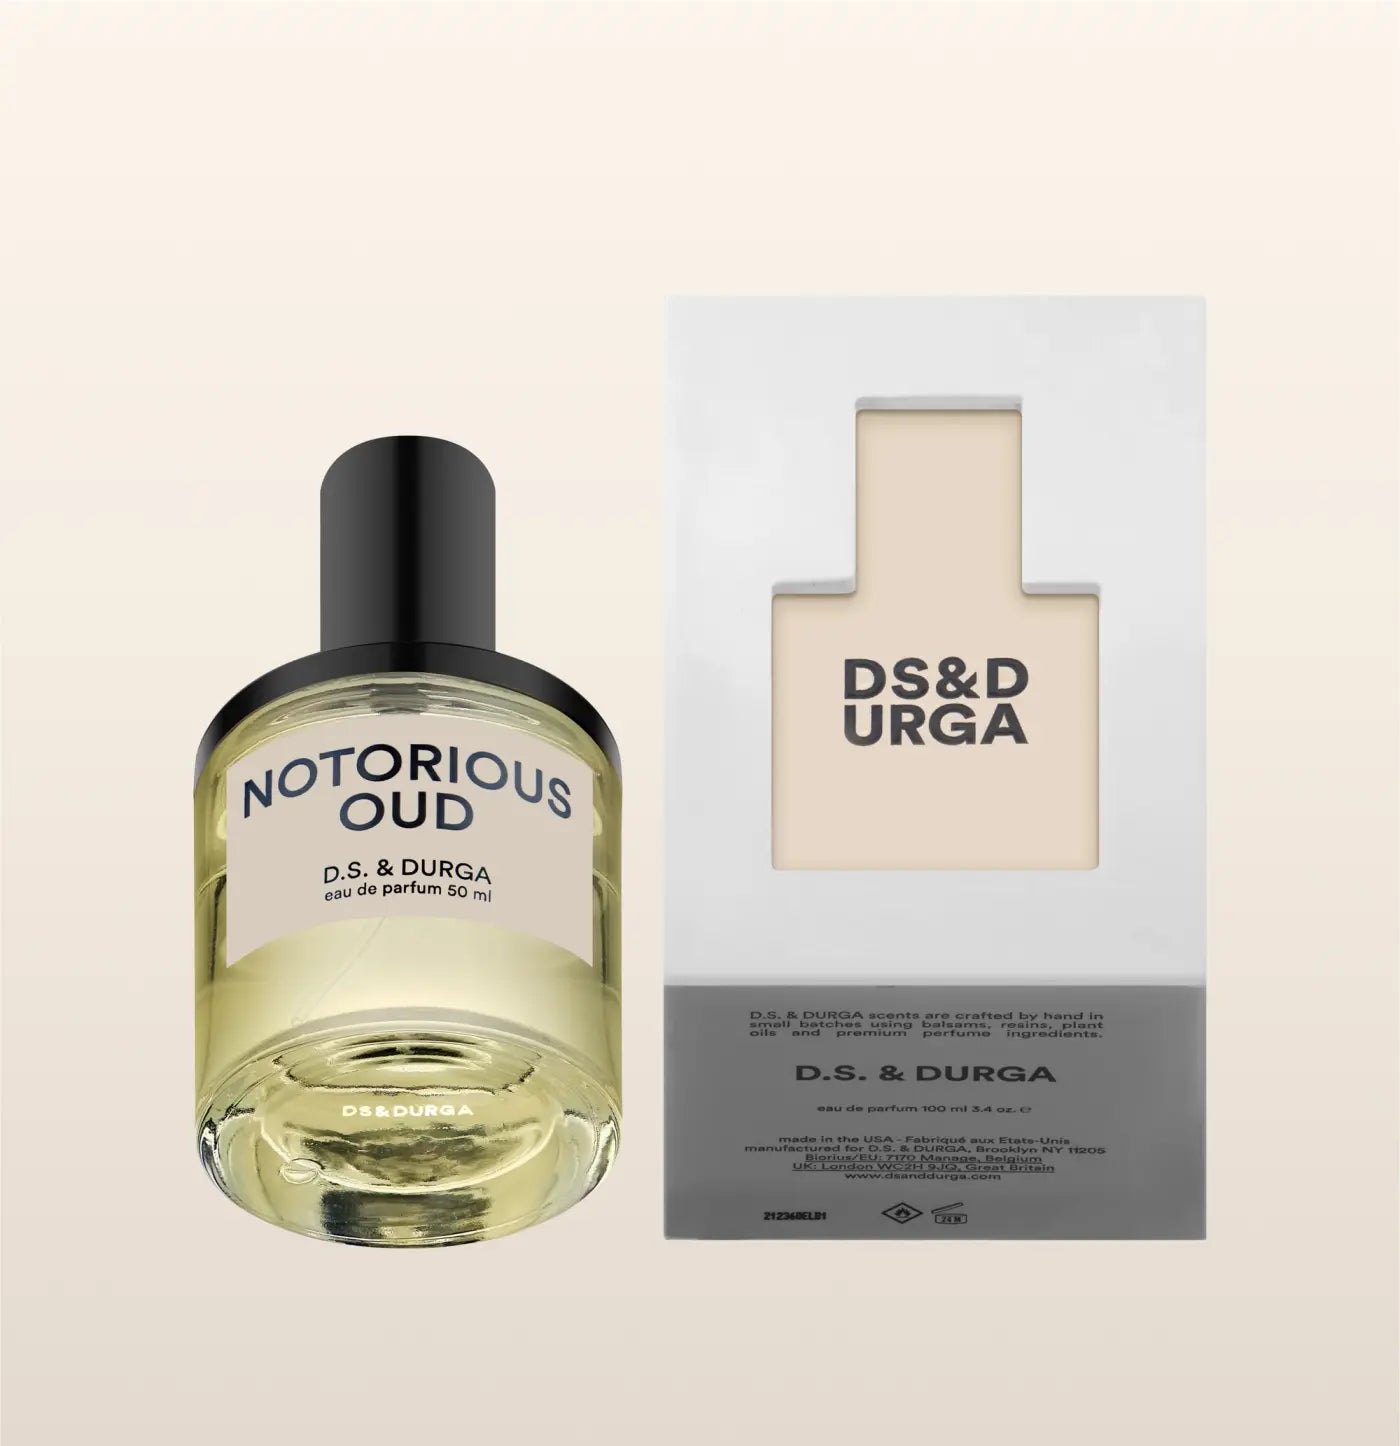 DS & DURGA - NOTORIOUS OUD Eau de Parfum